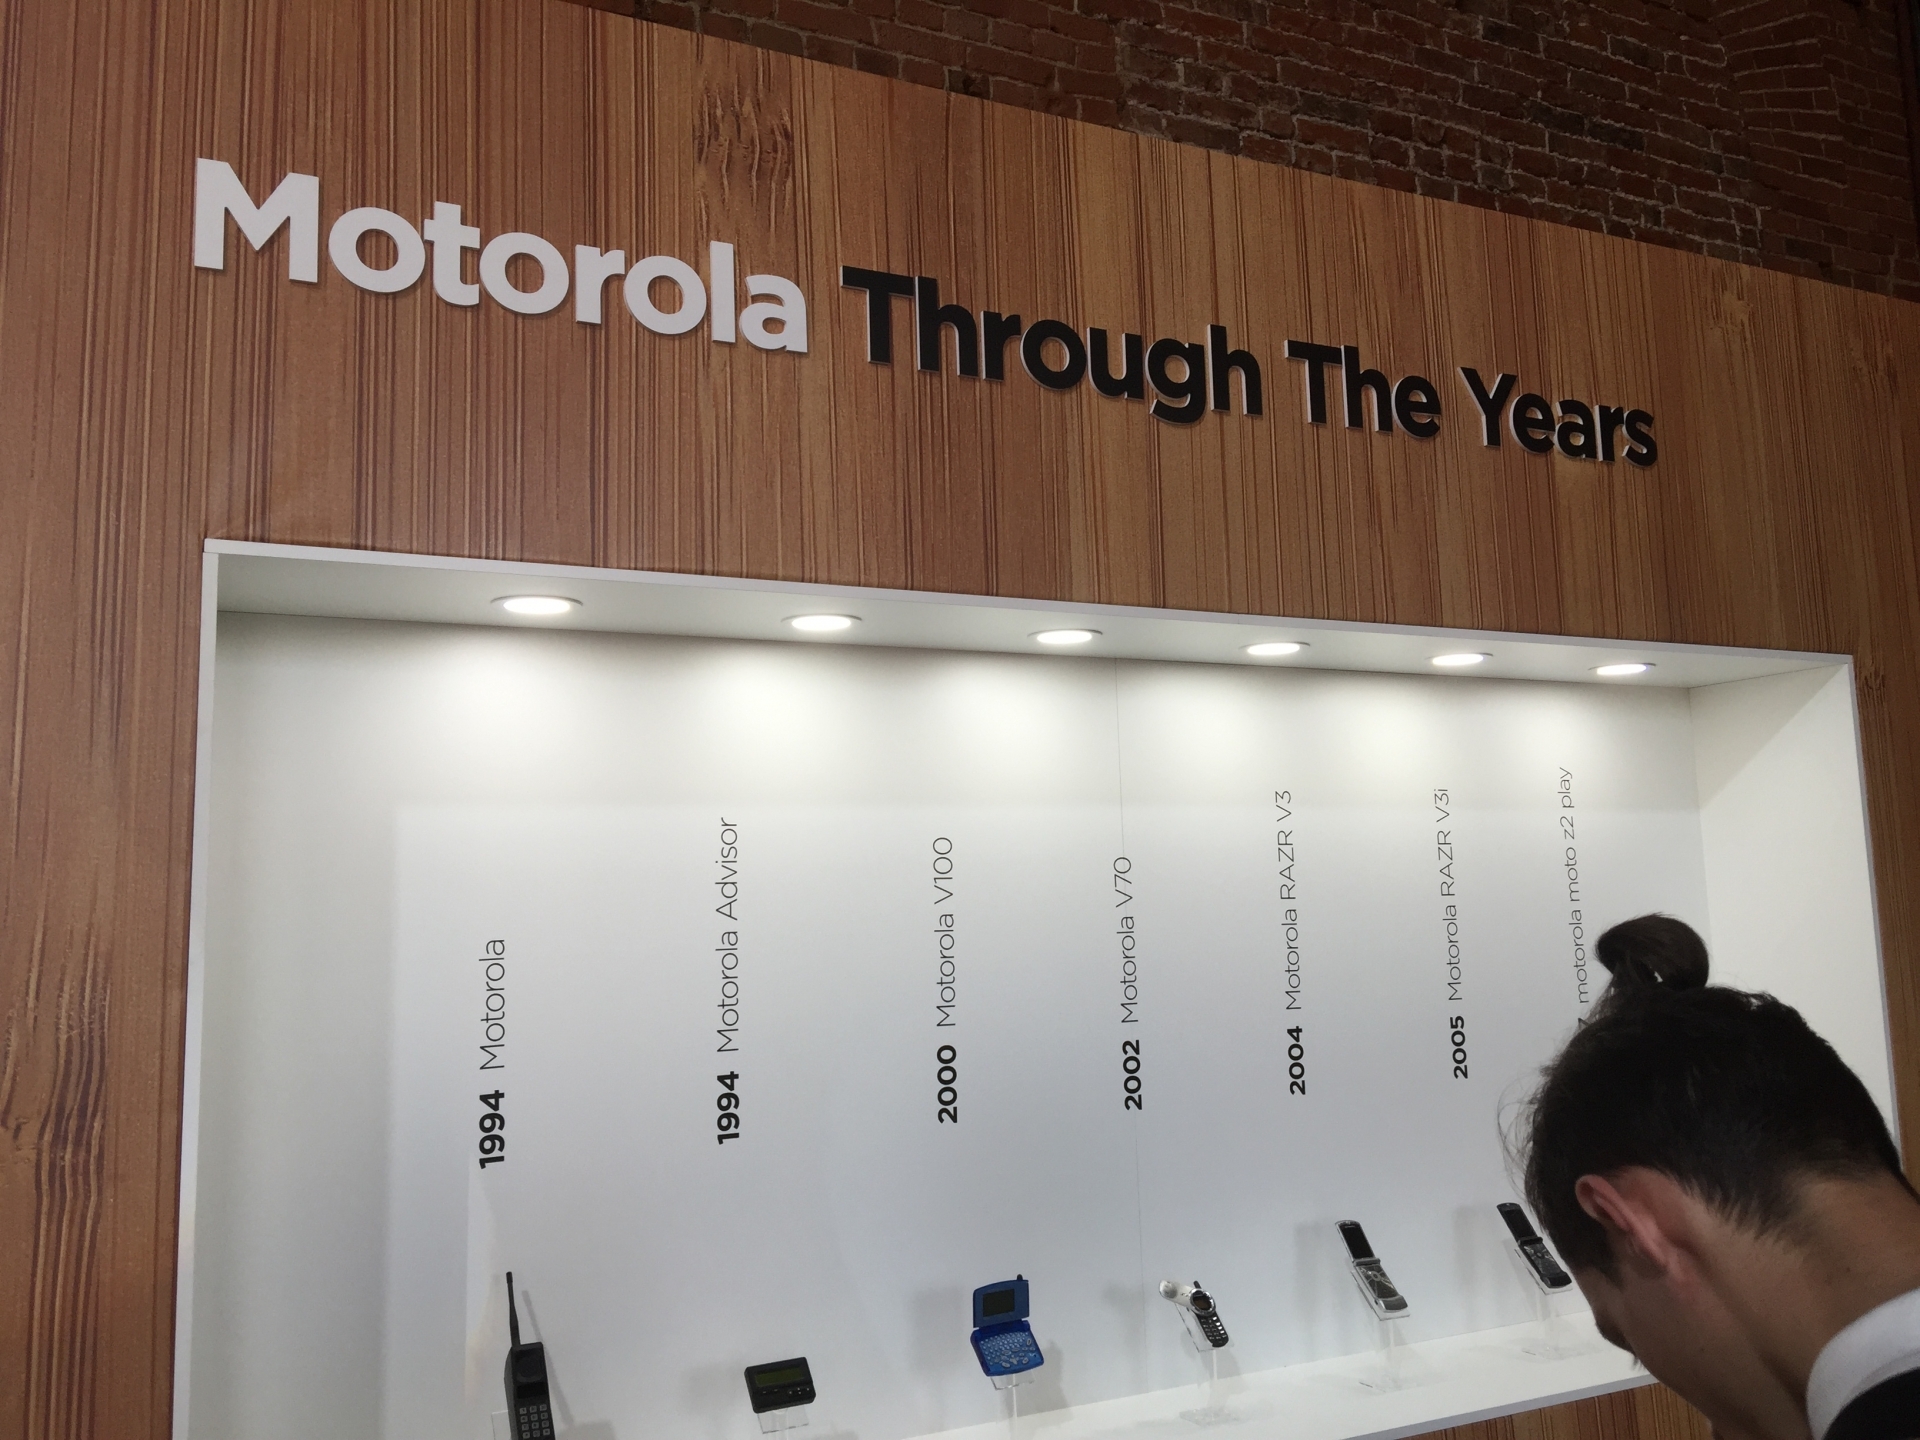 Изображение для компании Motorola под номером 3